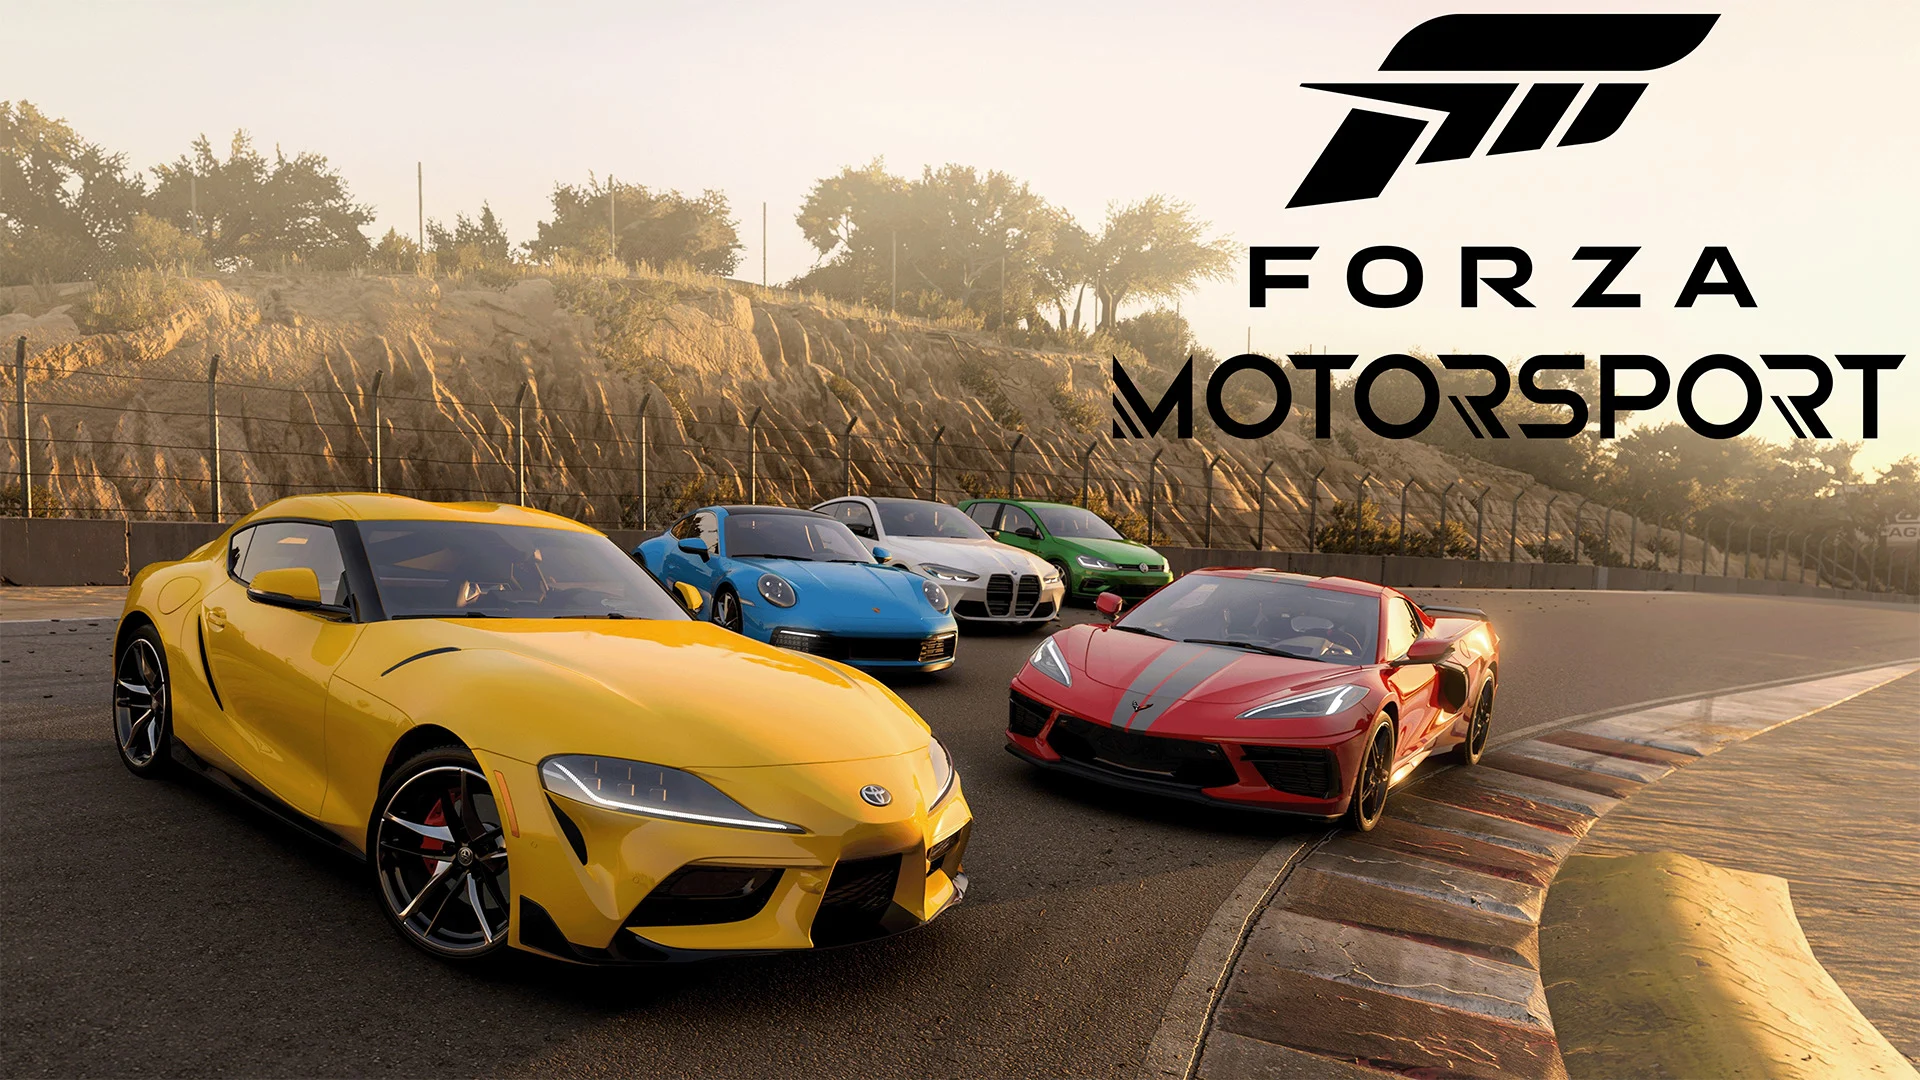 Forza Motorsport update 1.0 met een hoop bugfixes en gameplayverbeteringen